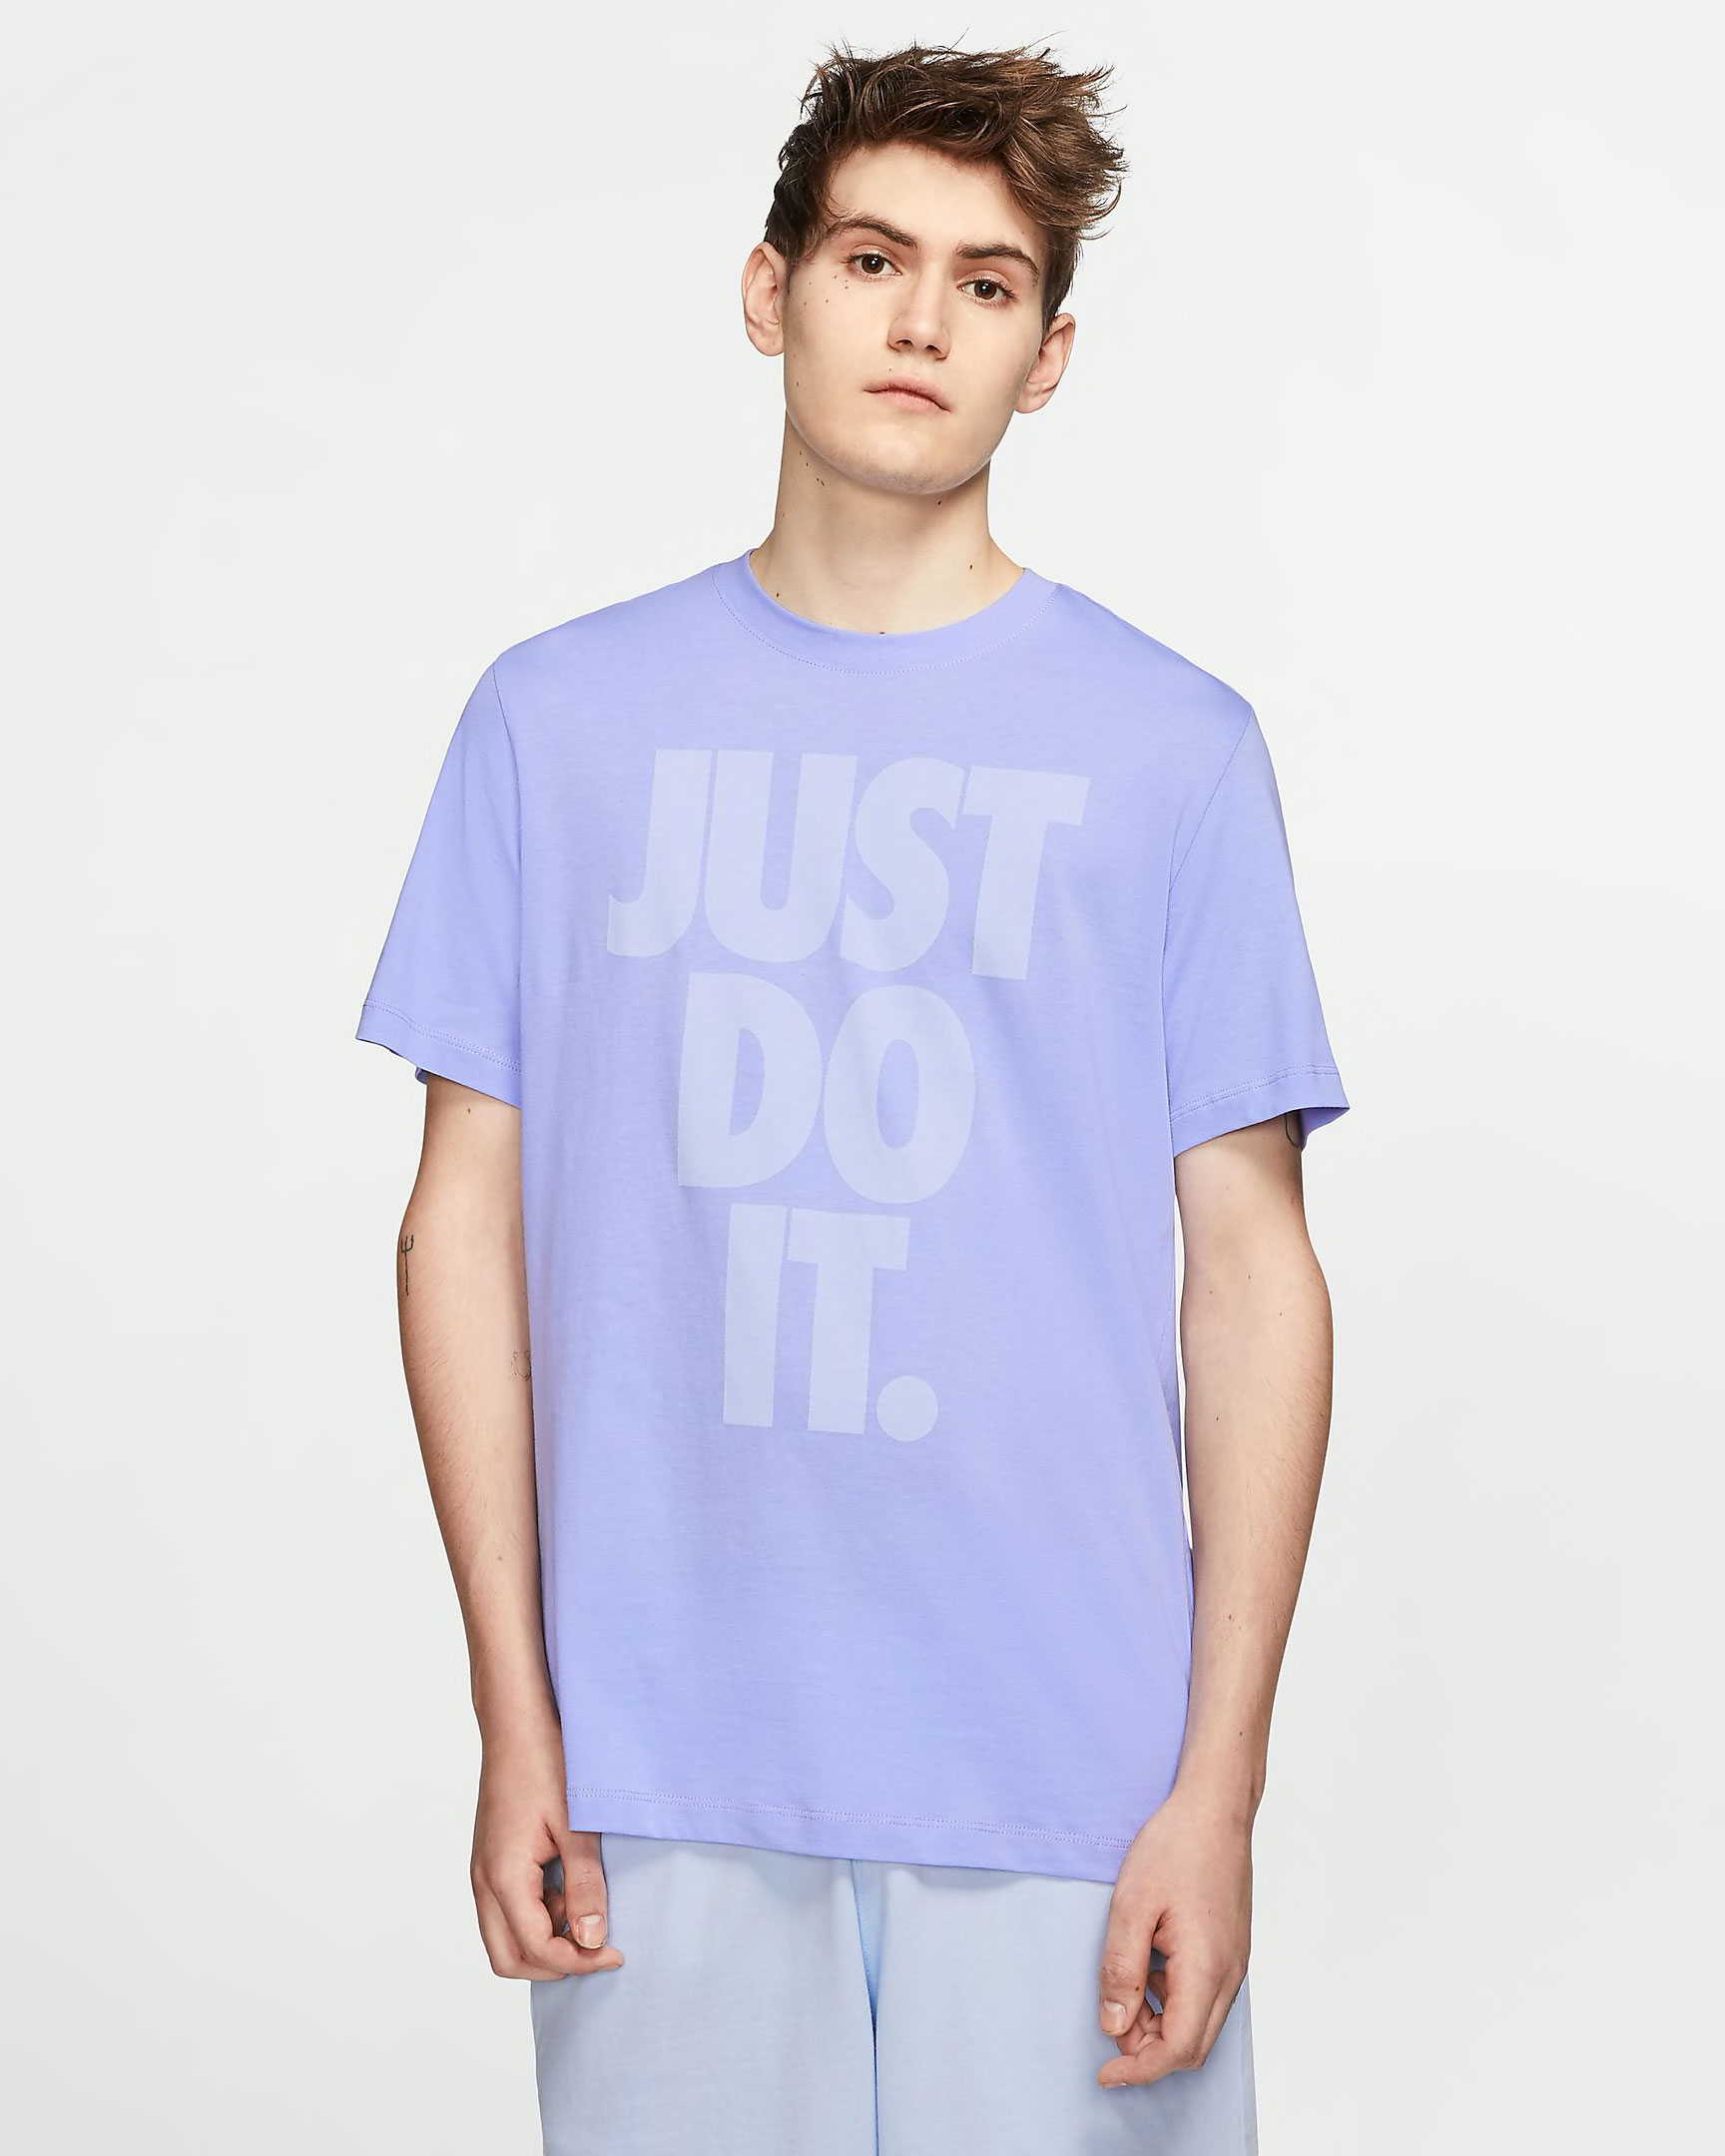 nike-jdi-just-do-it-shirt-purple